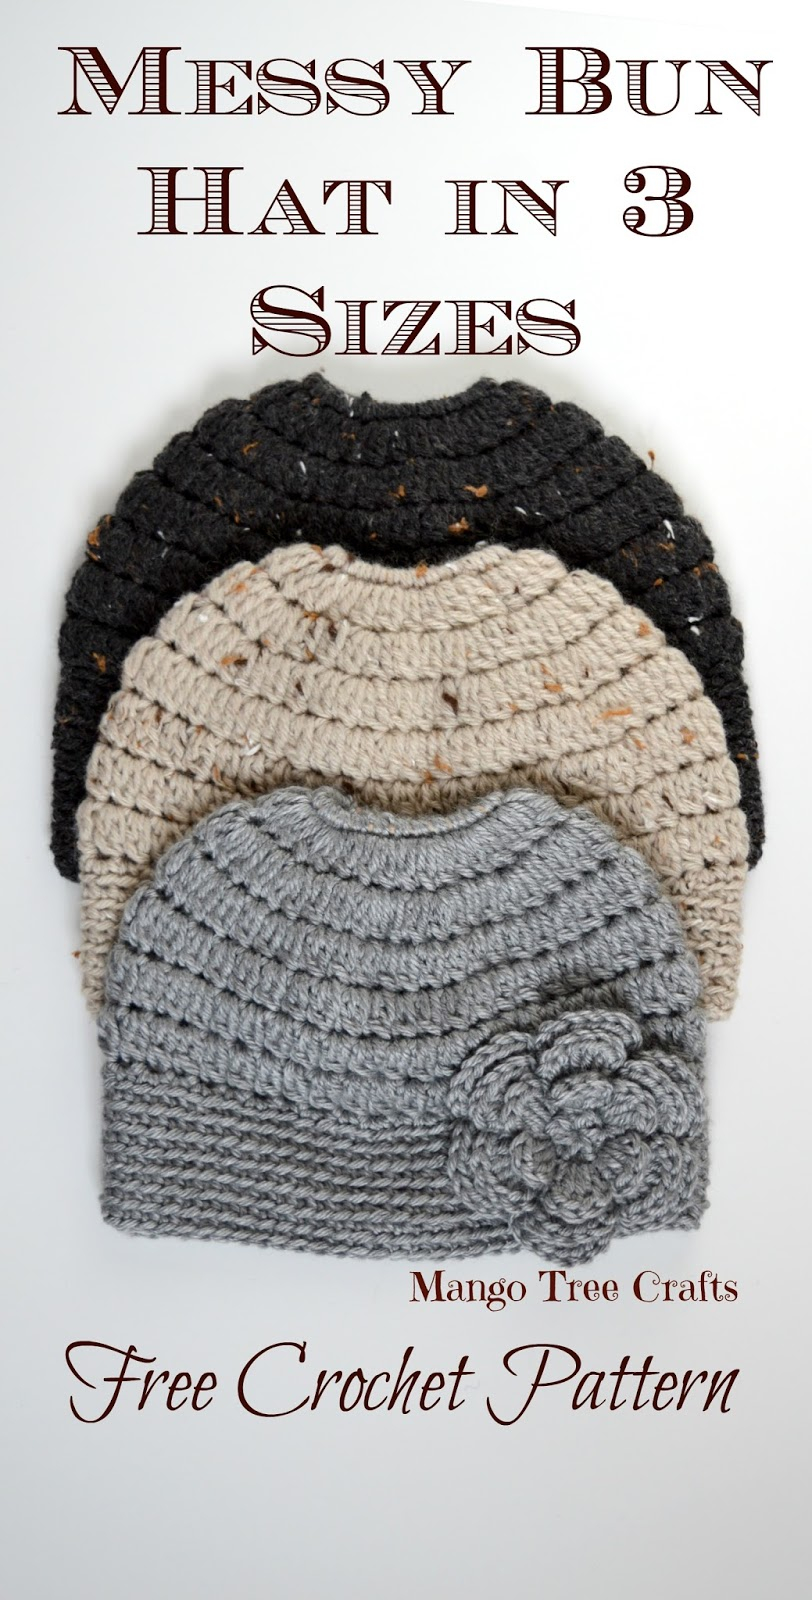 How To Follow A Crochet Pattern Messy Bun Hat Free Crochet Pattern In 3 Sizes